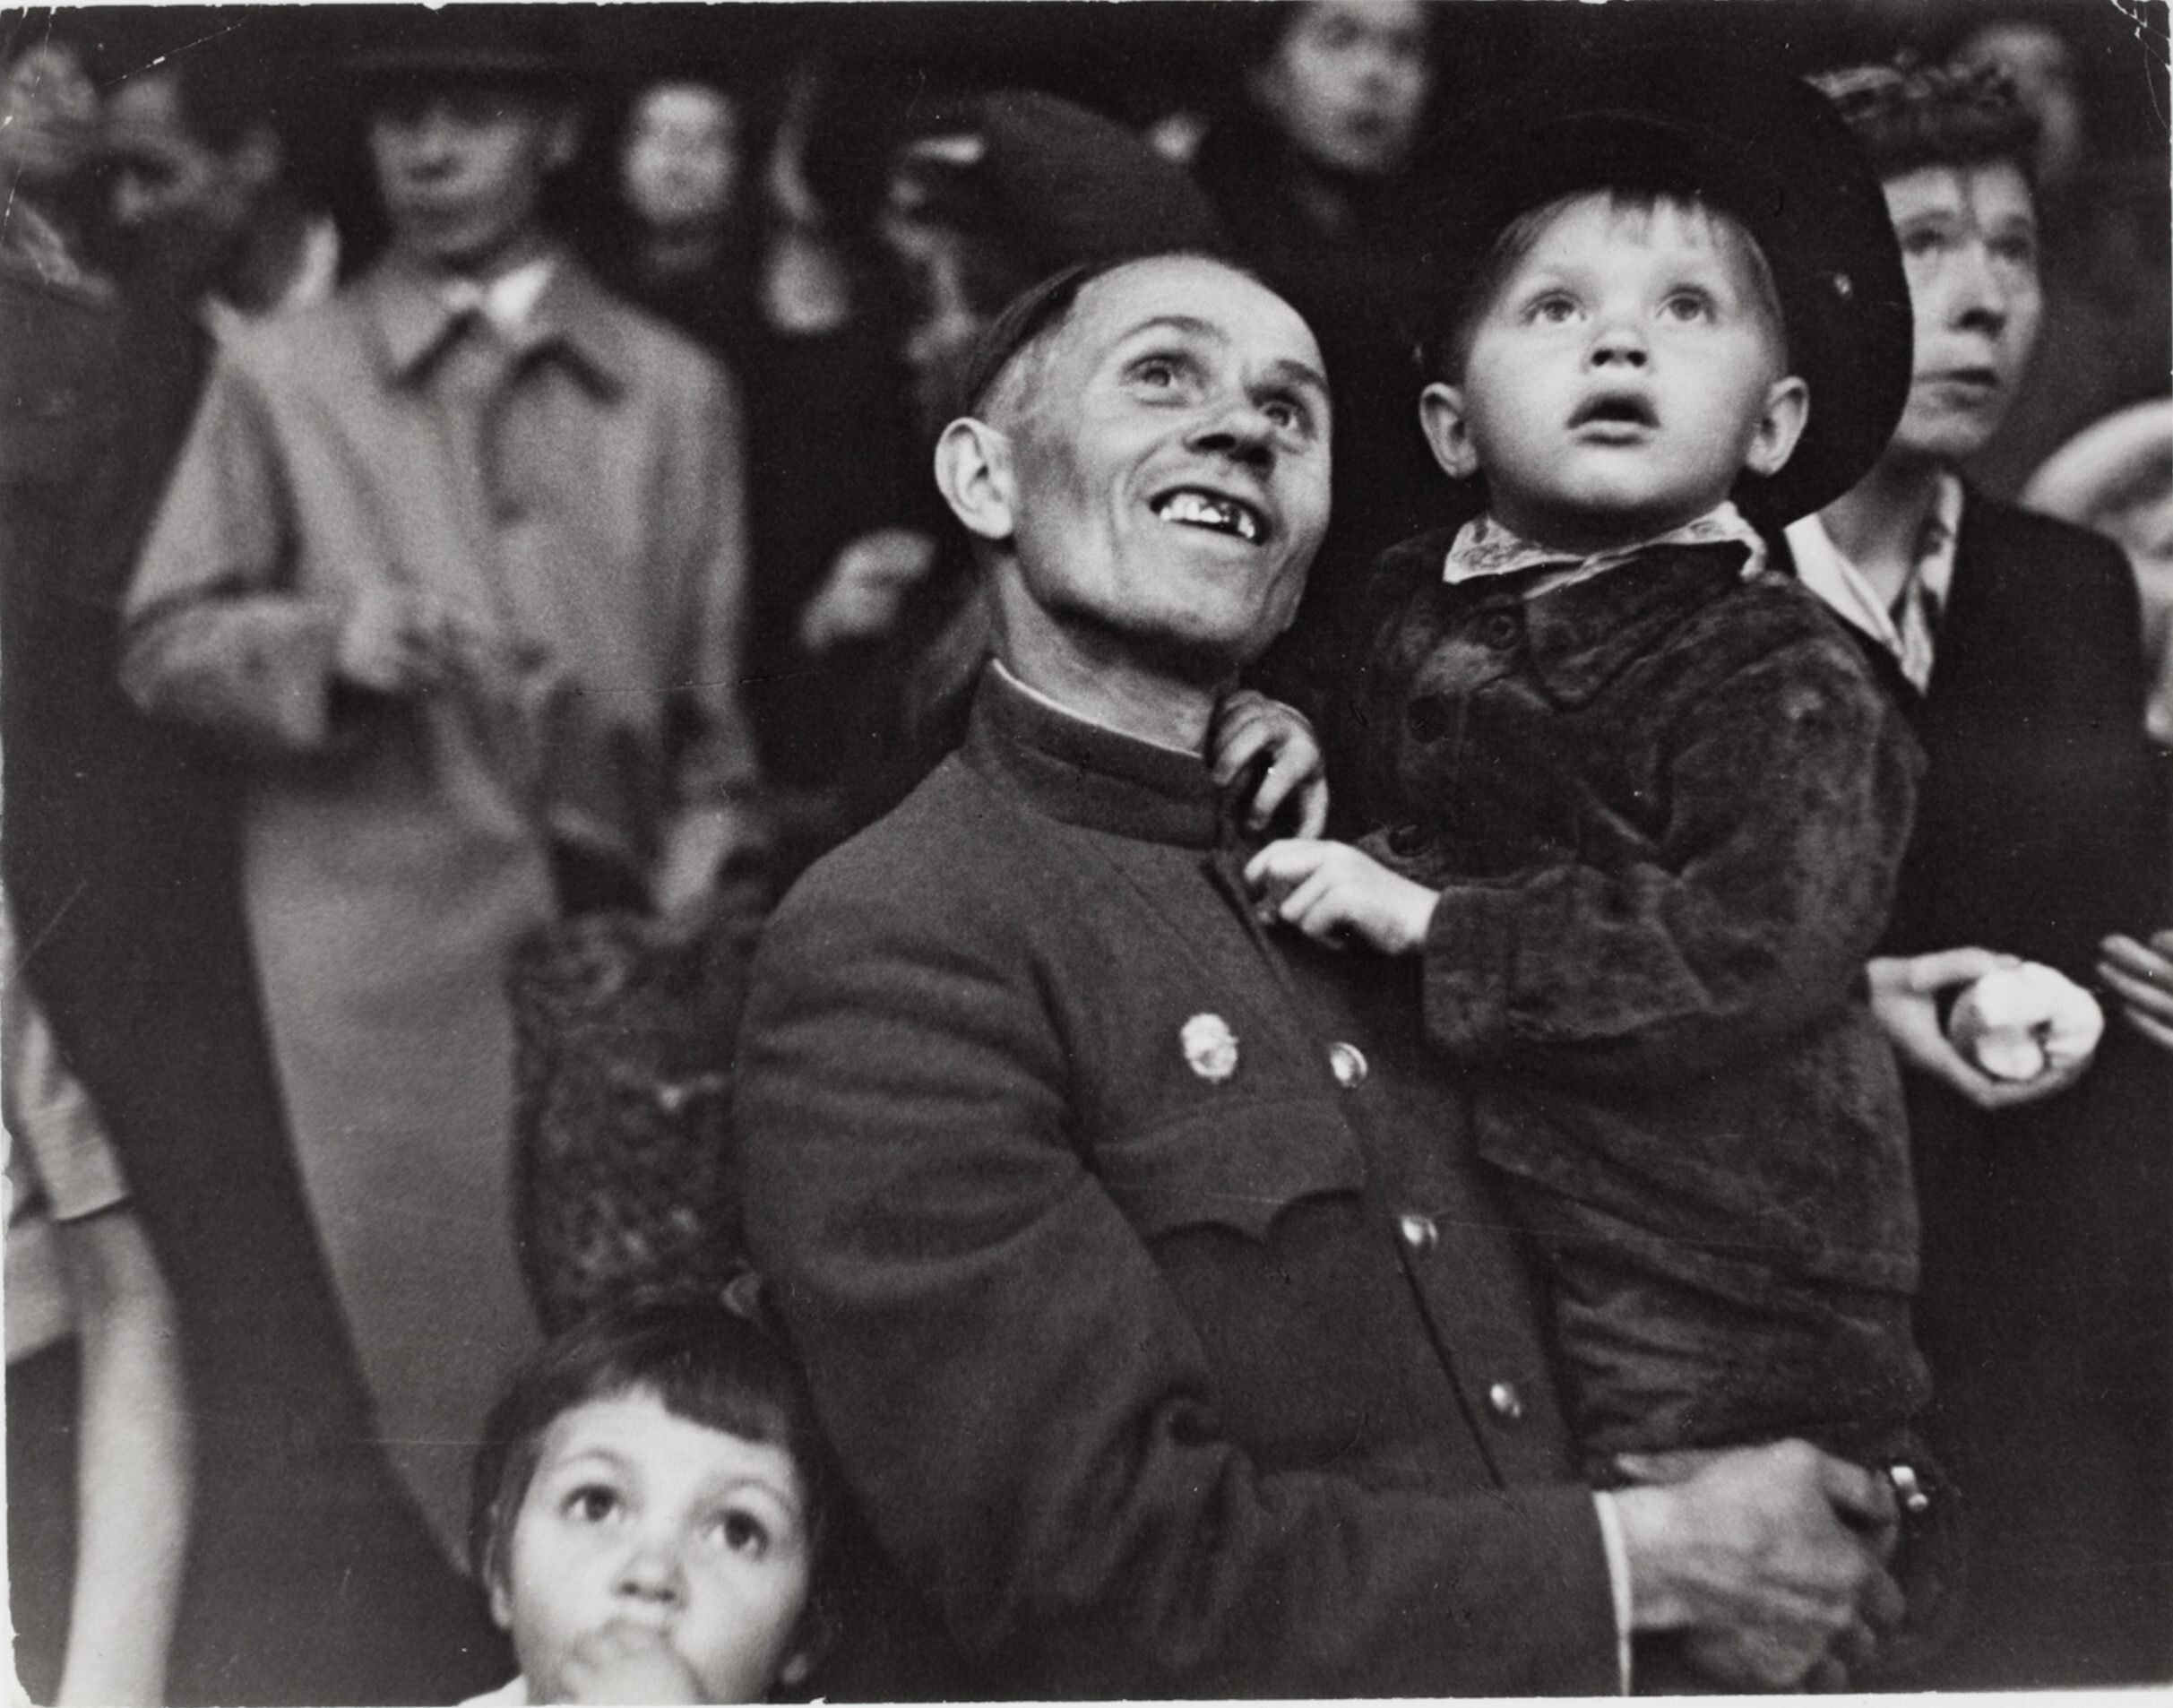 Мужчина с ребенком смотрит фейерверк во время празднования годовщины Москвы, Москва, 1947 год. Фотограф Роберт Капа